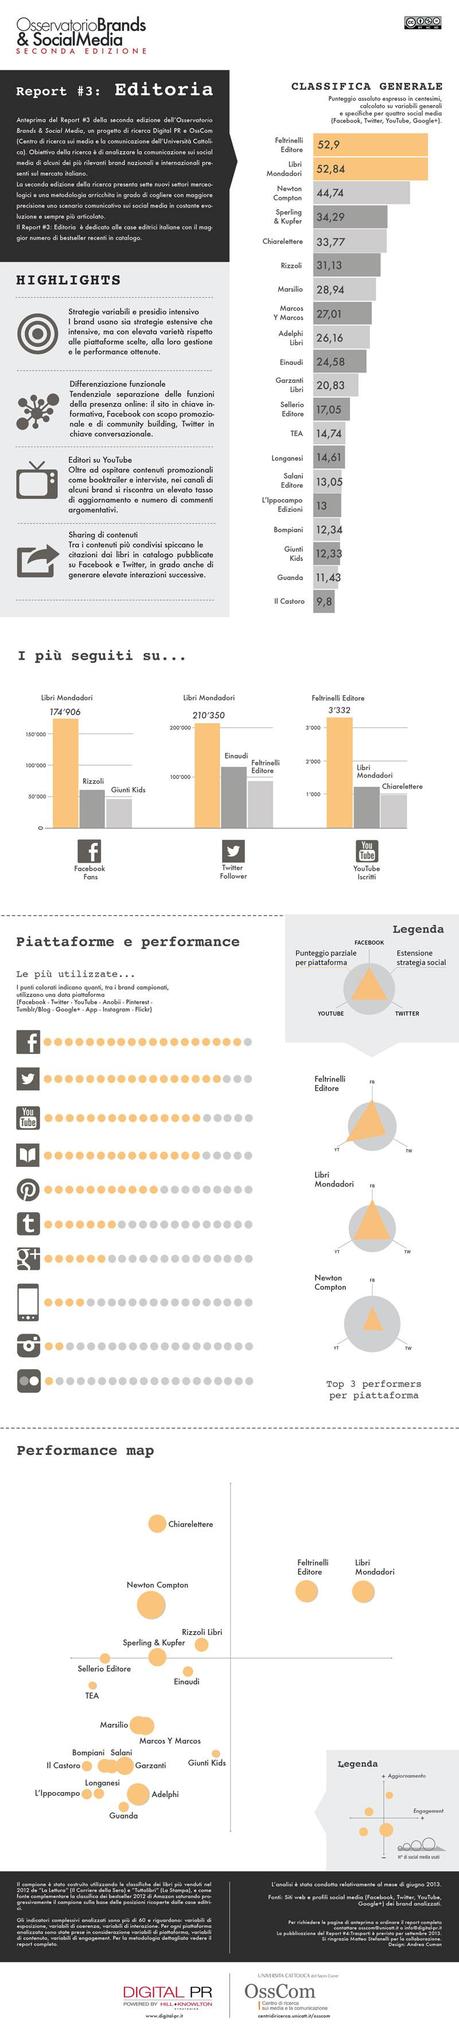 Brands & Social Media, analisi del settore Editoria [Infografica]